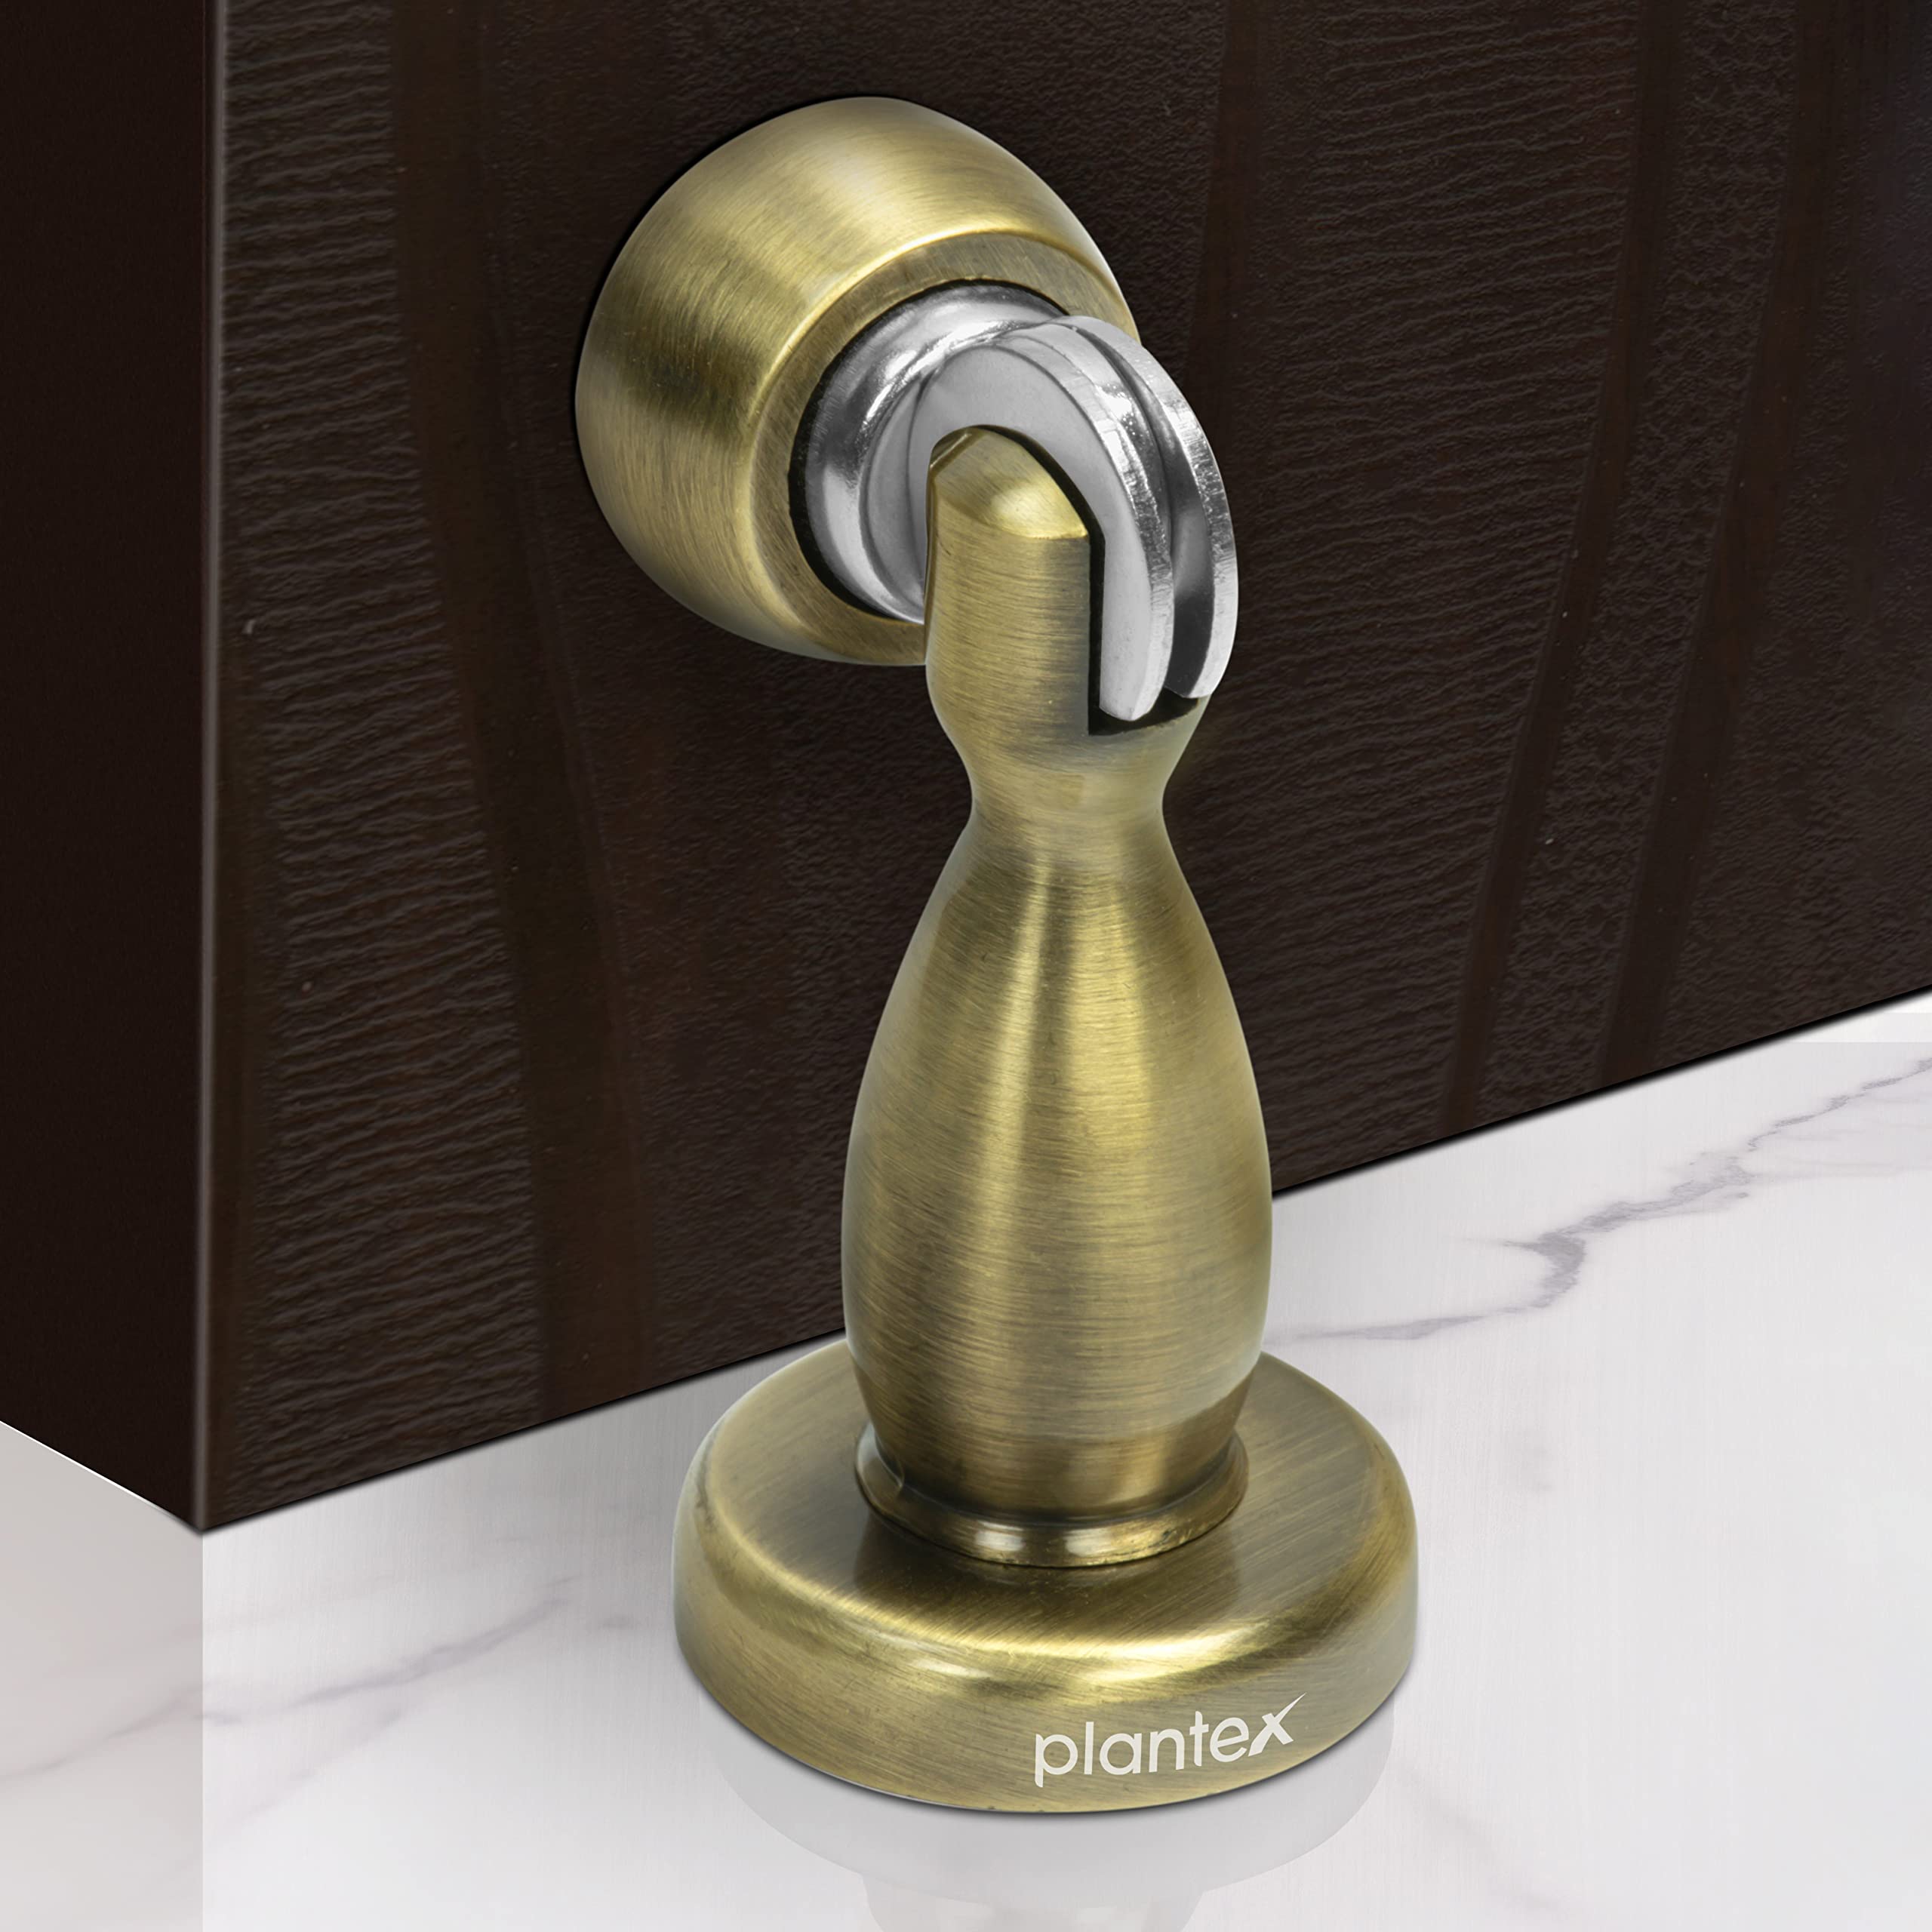 Plantex Magnetic Door Stopper for Home/ 360 Degree Magnet Door Catcher/Door Holder for Main Door/Bedroom/Office and Hotel Door - Pack of 20 (4 inch, Brass Antique)